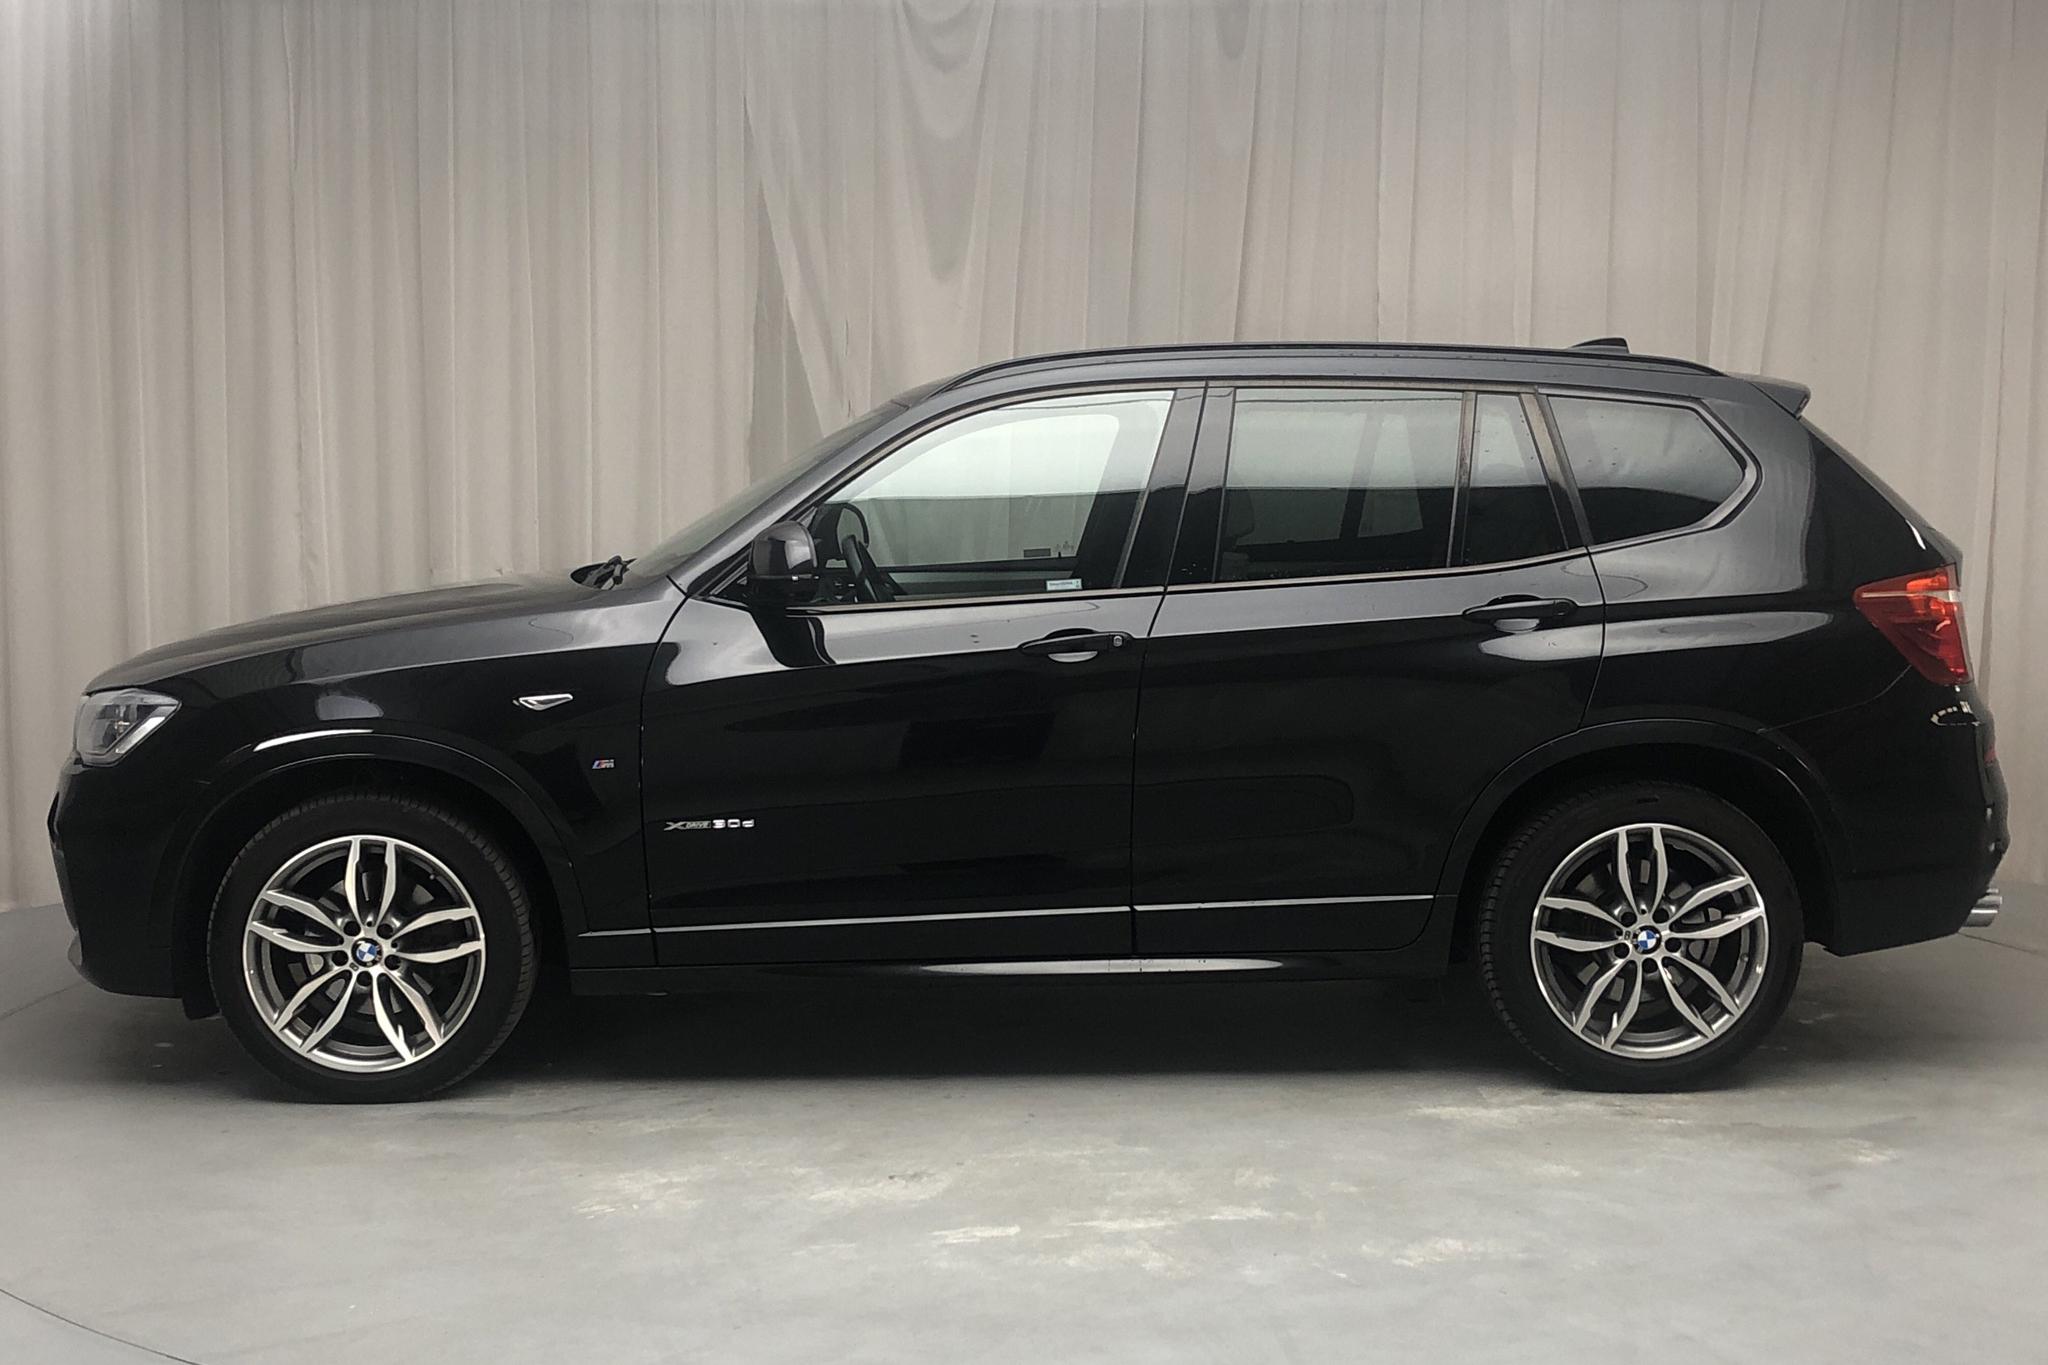 BMW X3 xDrive30d, F25 (258hk) - 107 230 km - Automatic - black - 2016